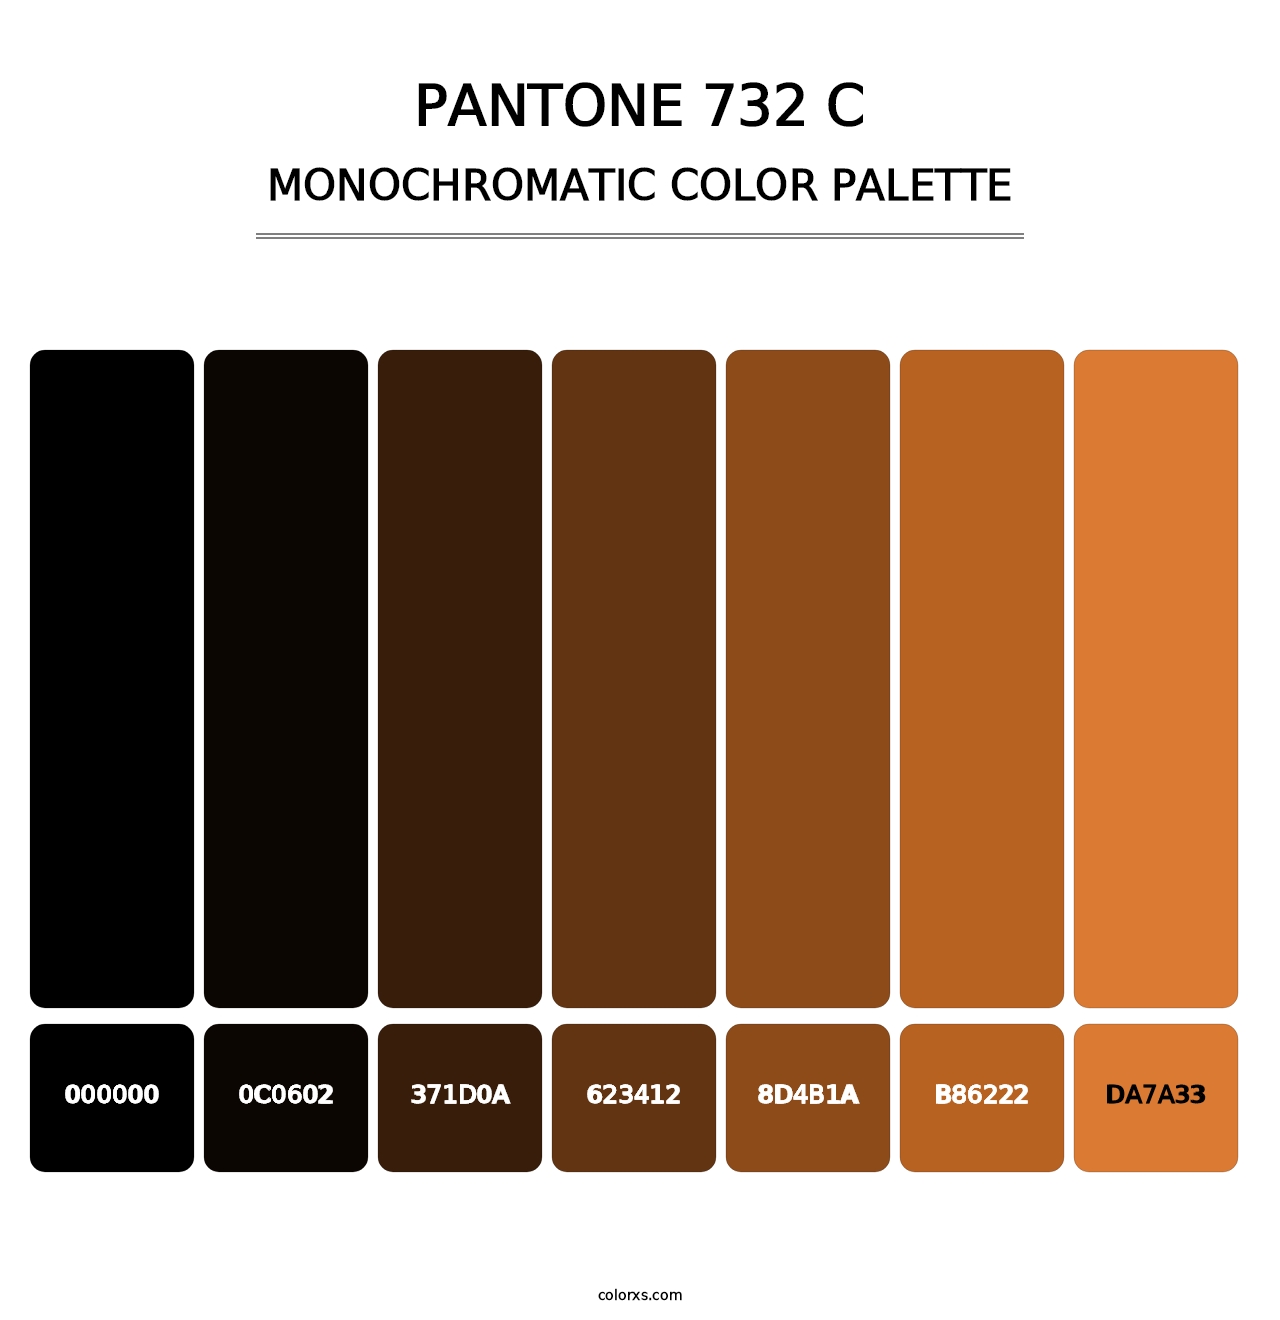 PANTONE 732 C - Monochromatic Color Palette